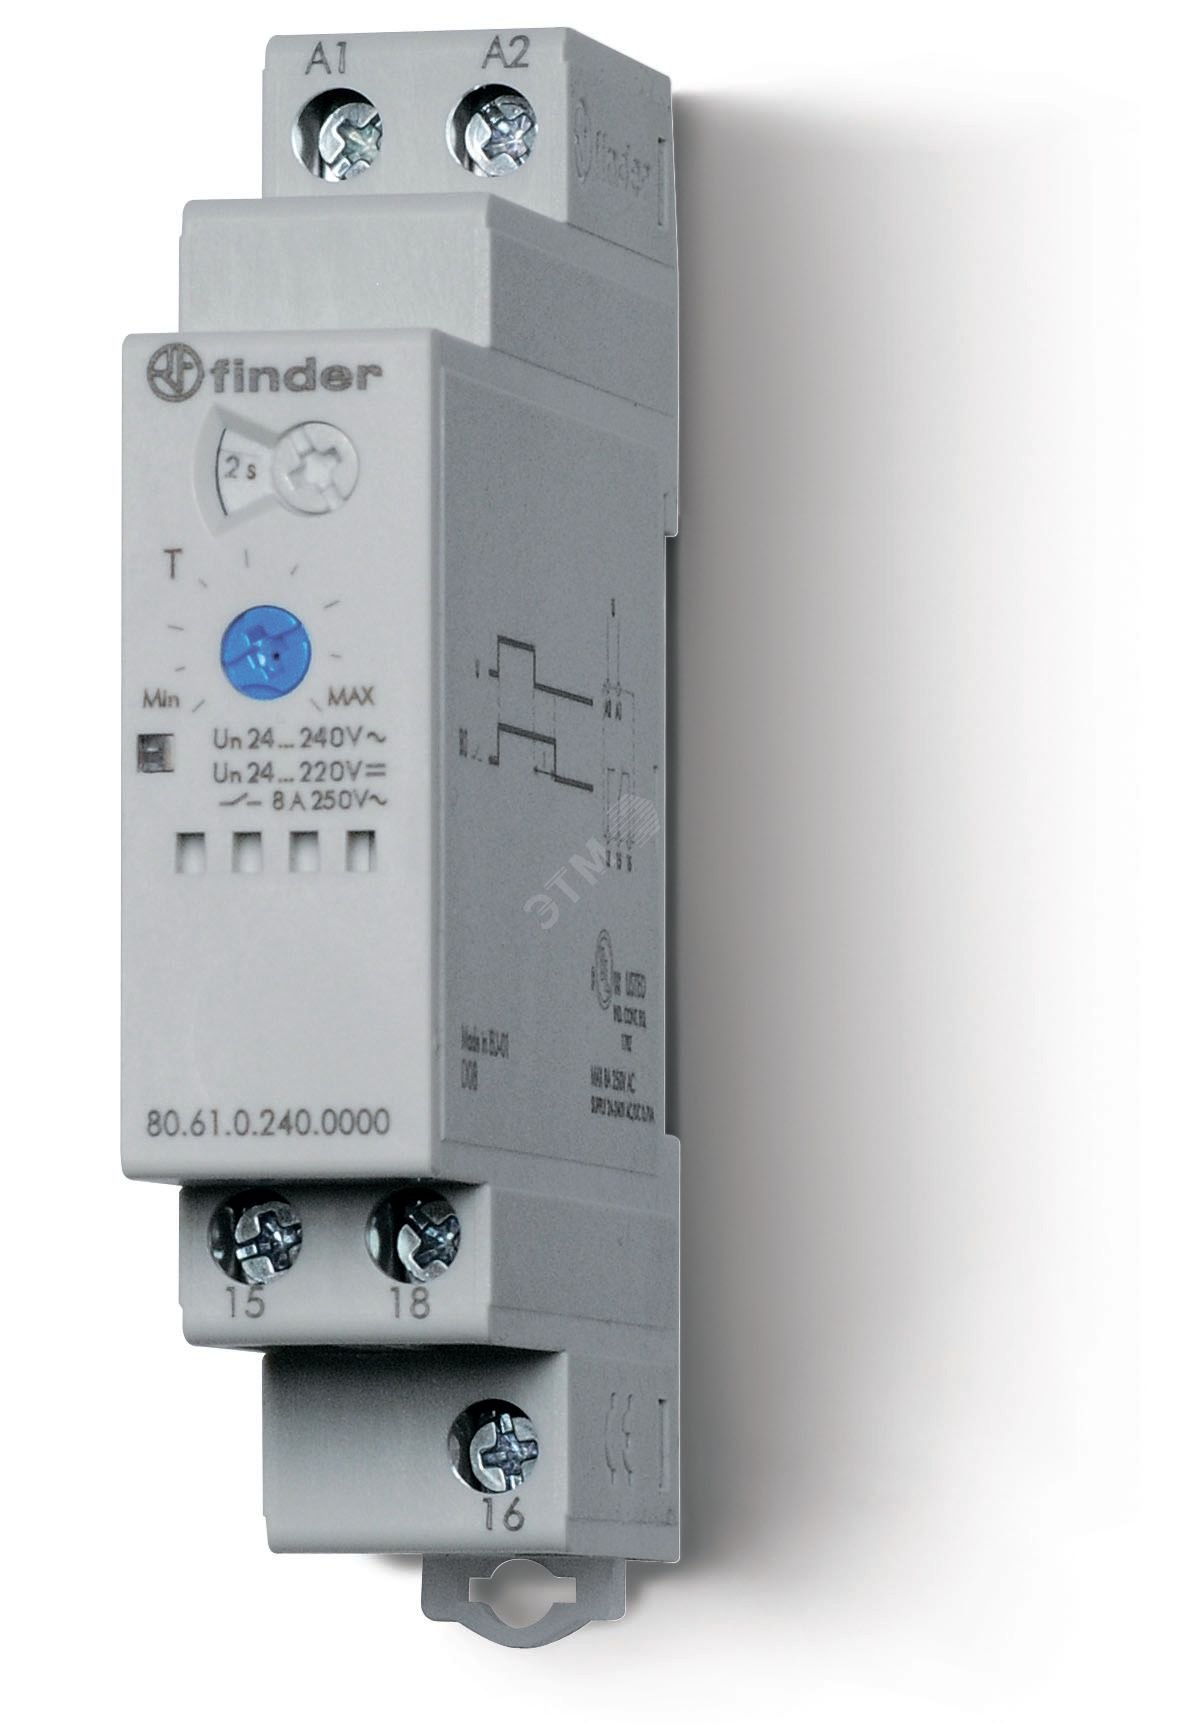 Таймер модульный 1-функциональный (ВI), питание 24…240В АС/DC, 1CO 8A, ширина 17.5мм, регулировка времени 0.05с…180c, степень защиты IP20, версия для ЖД-транспорта 80.61.0.240.0000T FINDER